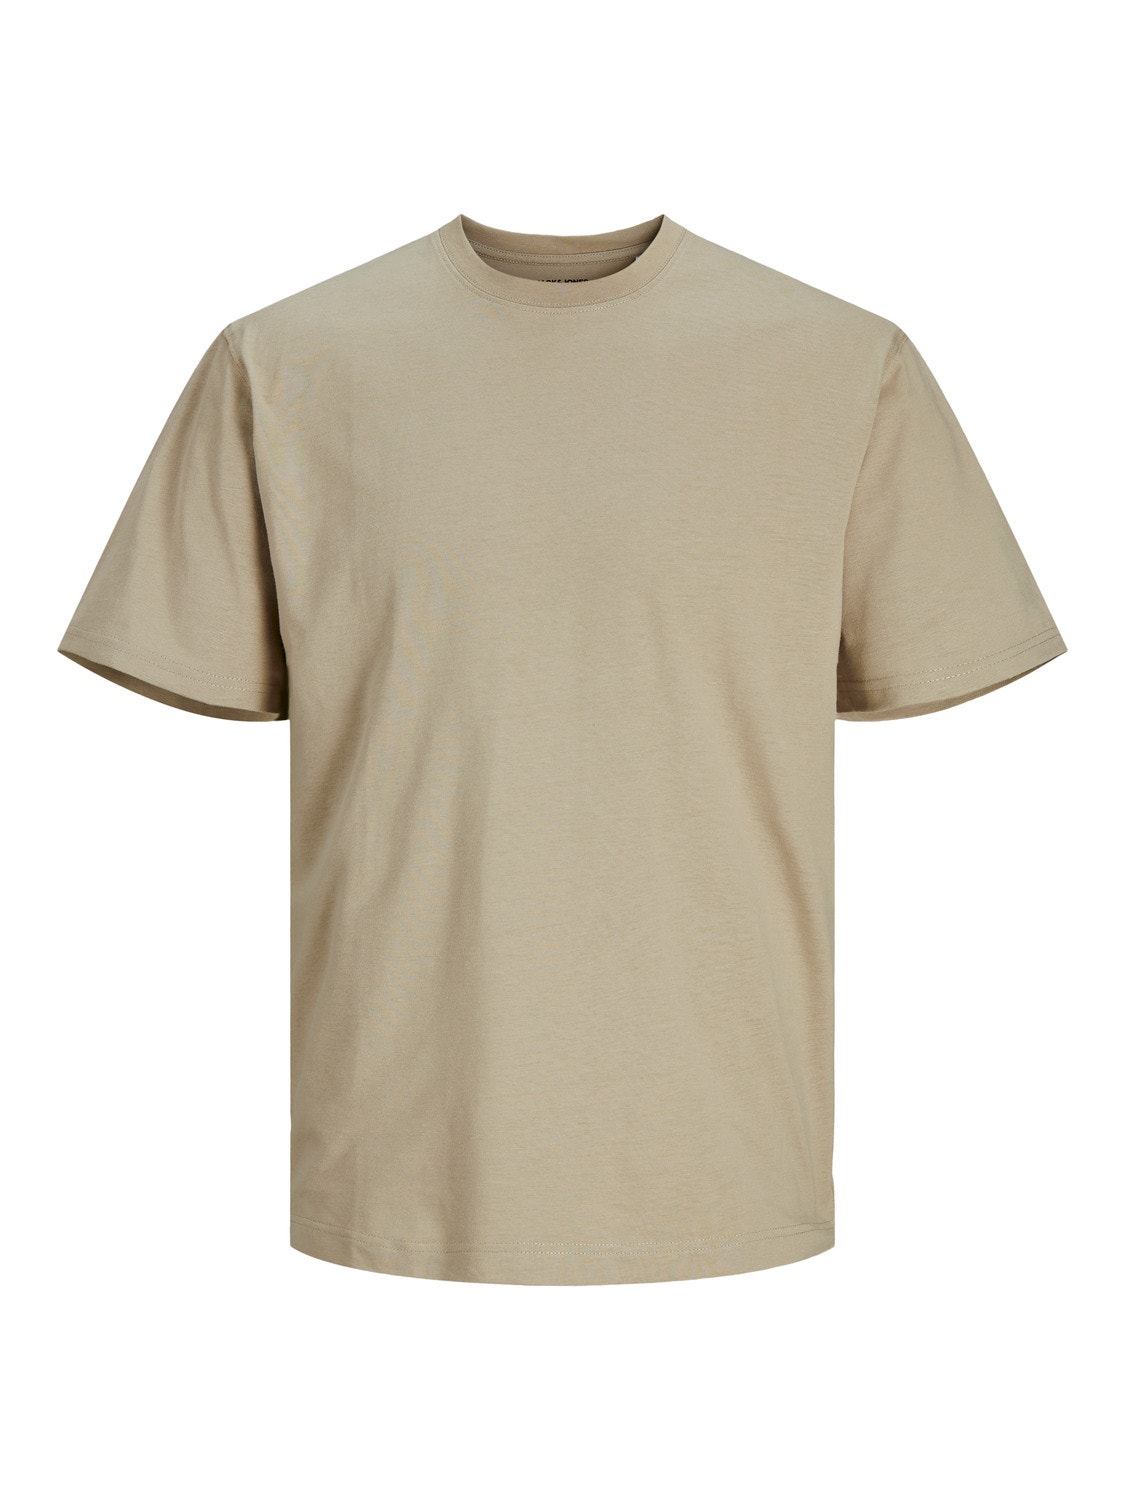 Jack & Jones Plain Crew neck T-shirt -Crockery - 12190467